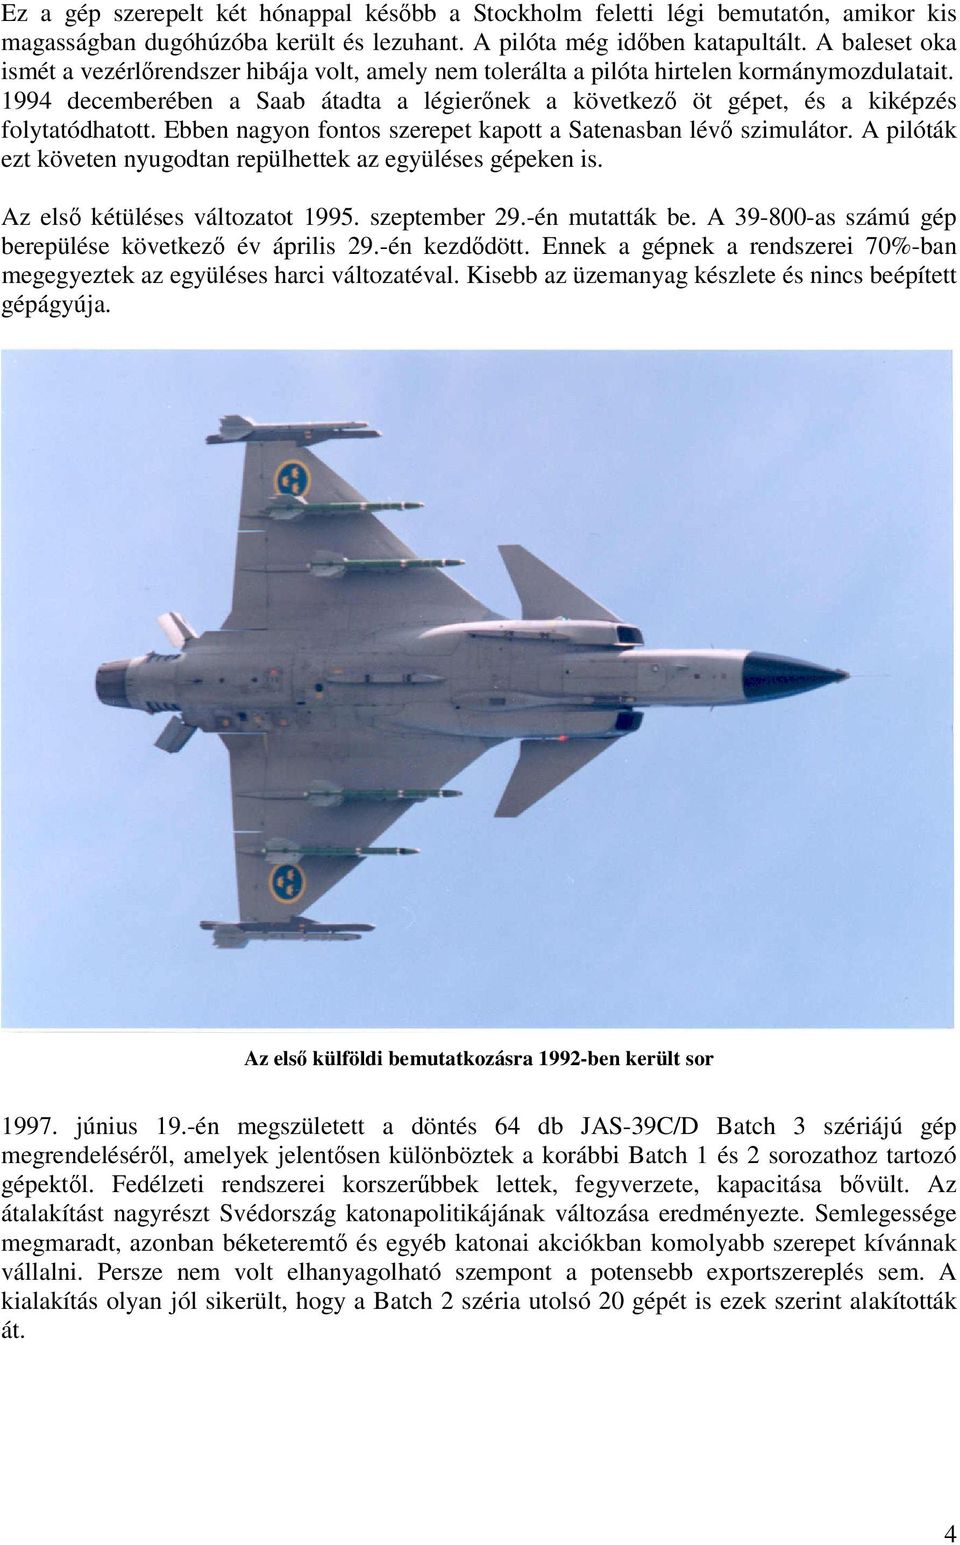 1994 decemberében a Saab átadta a légierőnek a következő öt gépet, és a kiképzés folytatódhatott. Ebben nagyon fontos szerepet kapott a Satenasban lévő szimulátor.